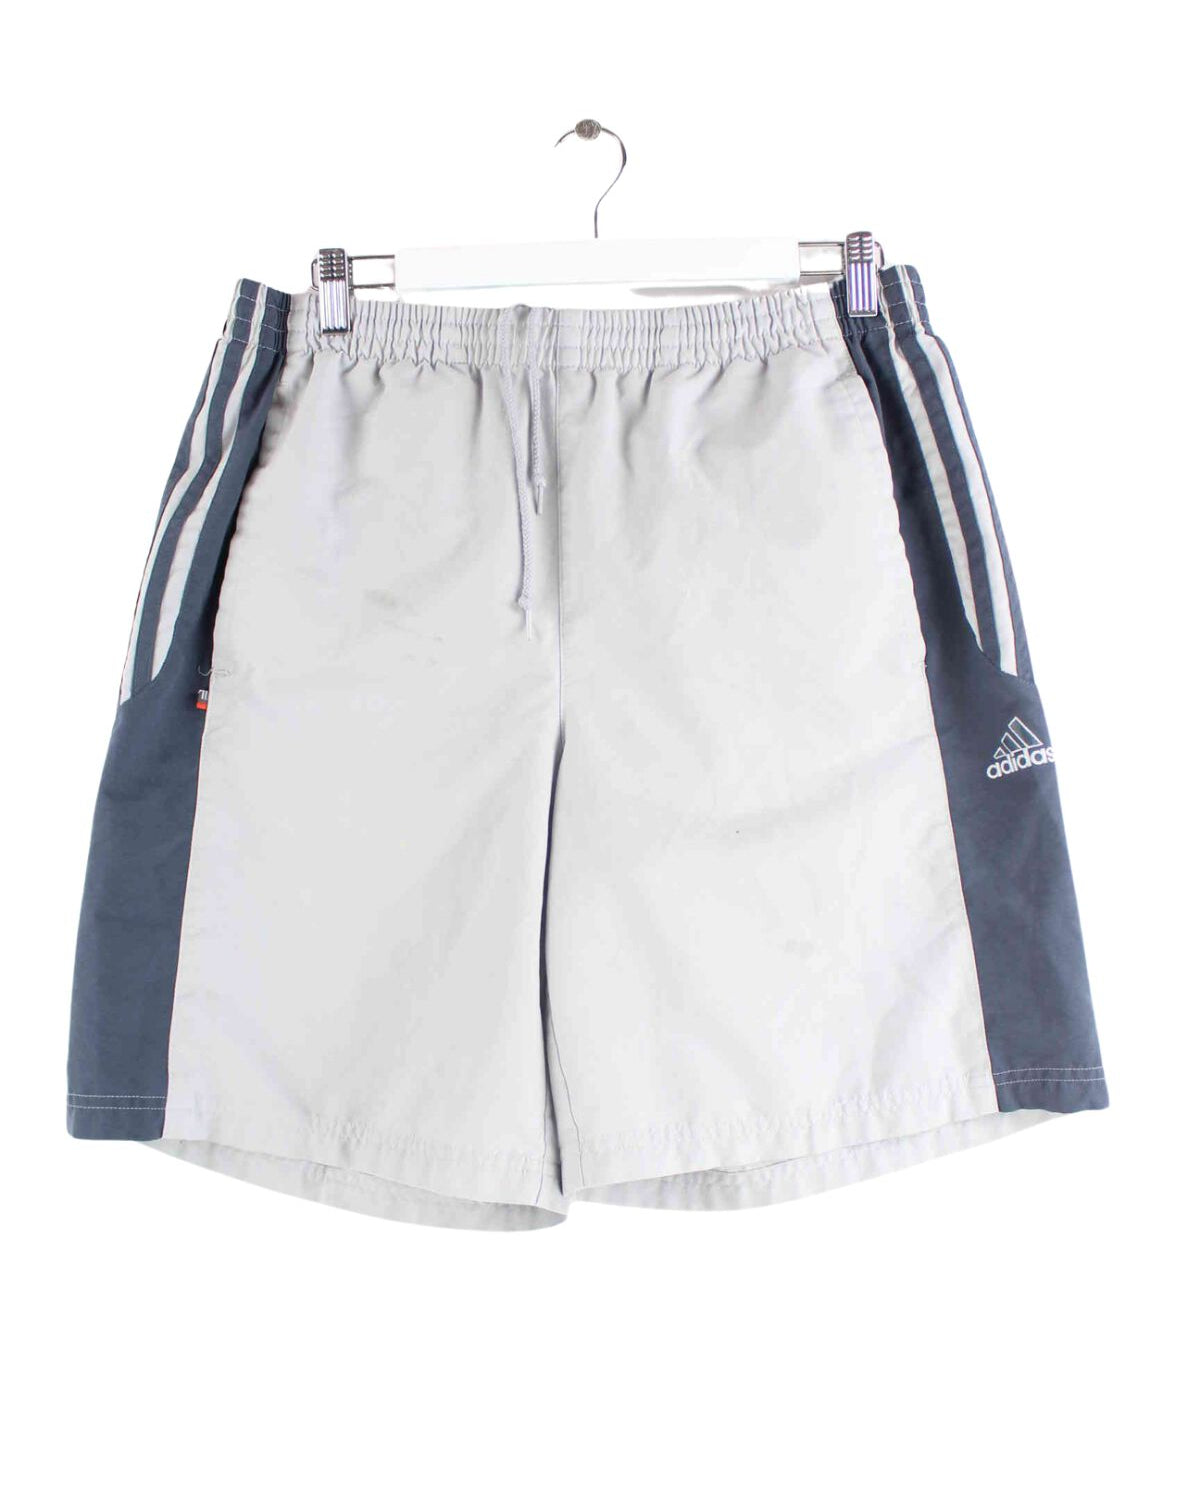 Adidas y2k Shorts Grau L (front image)